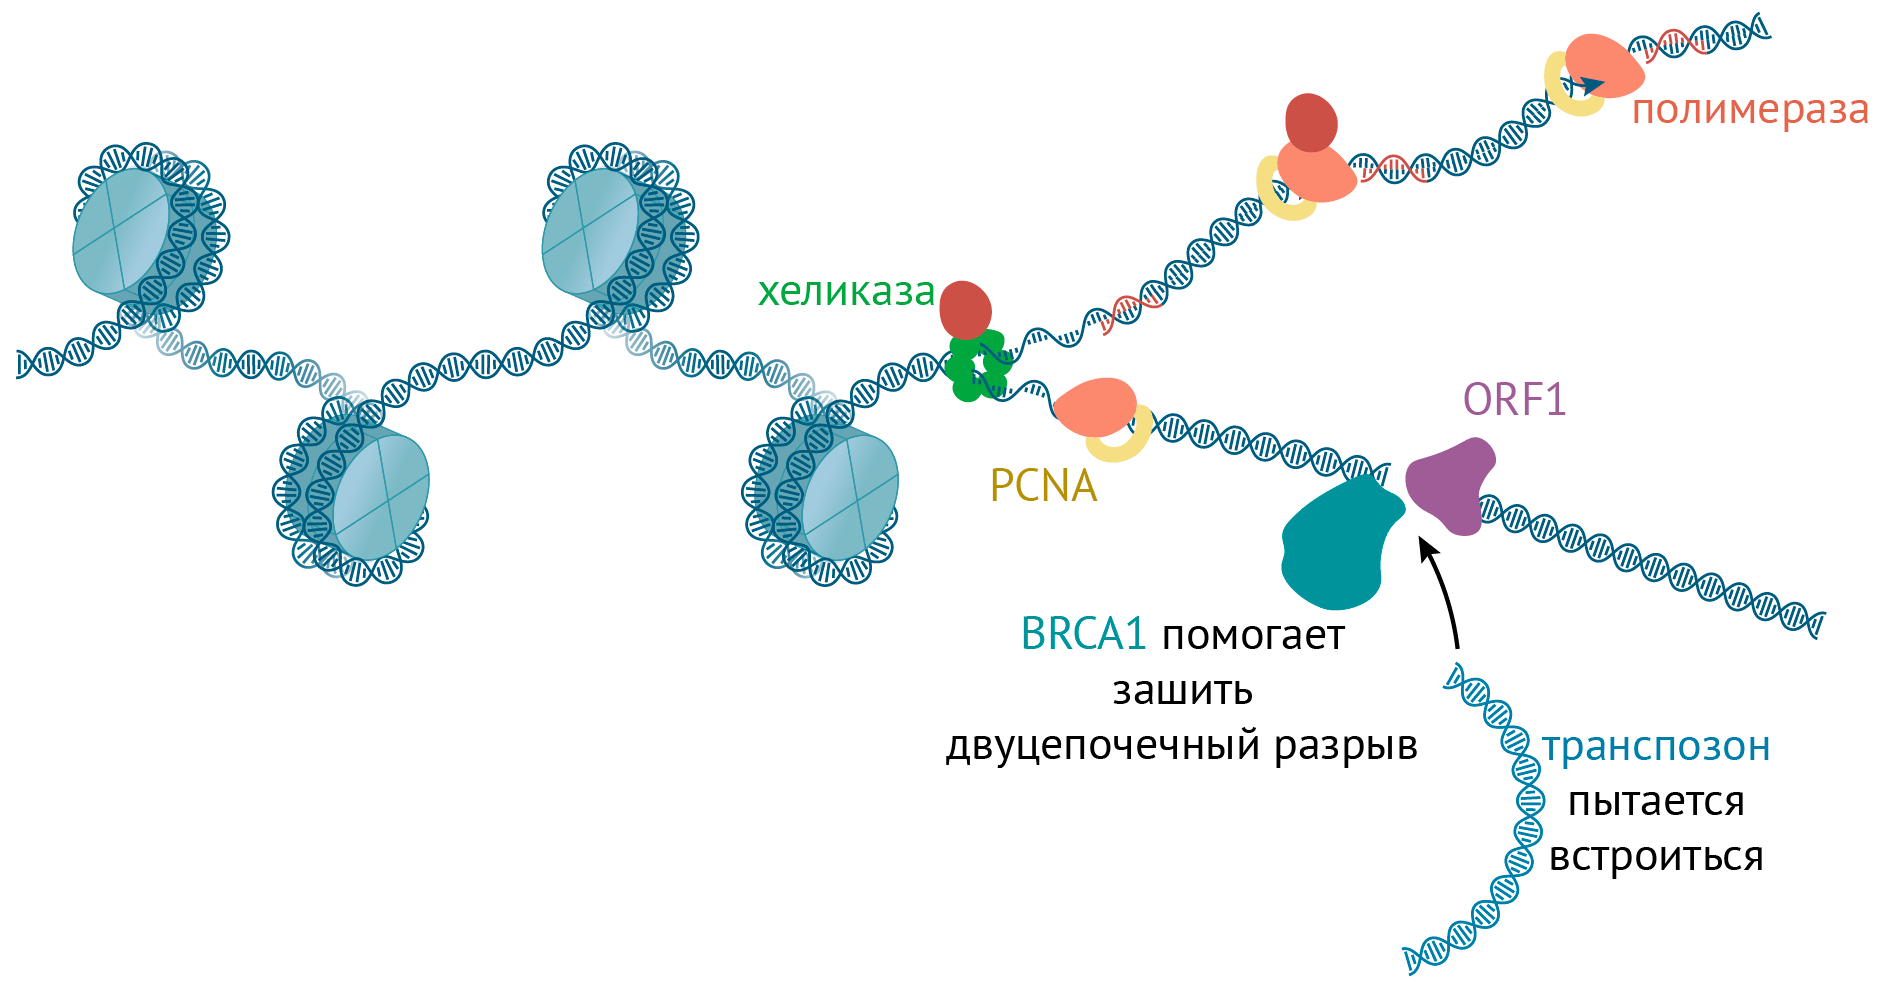 Соревнование транспозиции и починки ДНК во время репликации